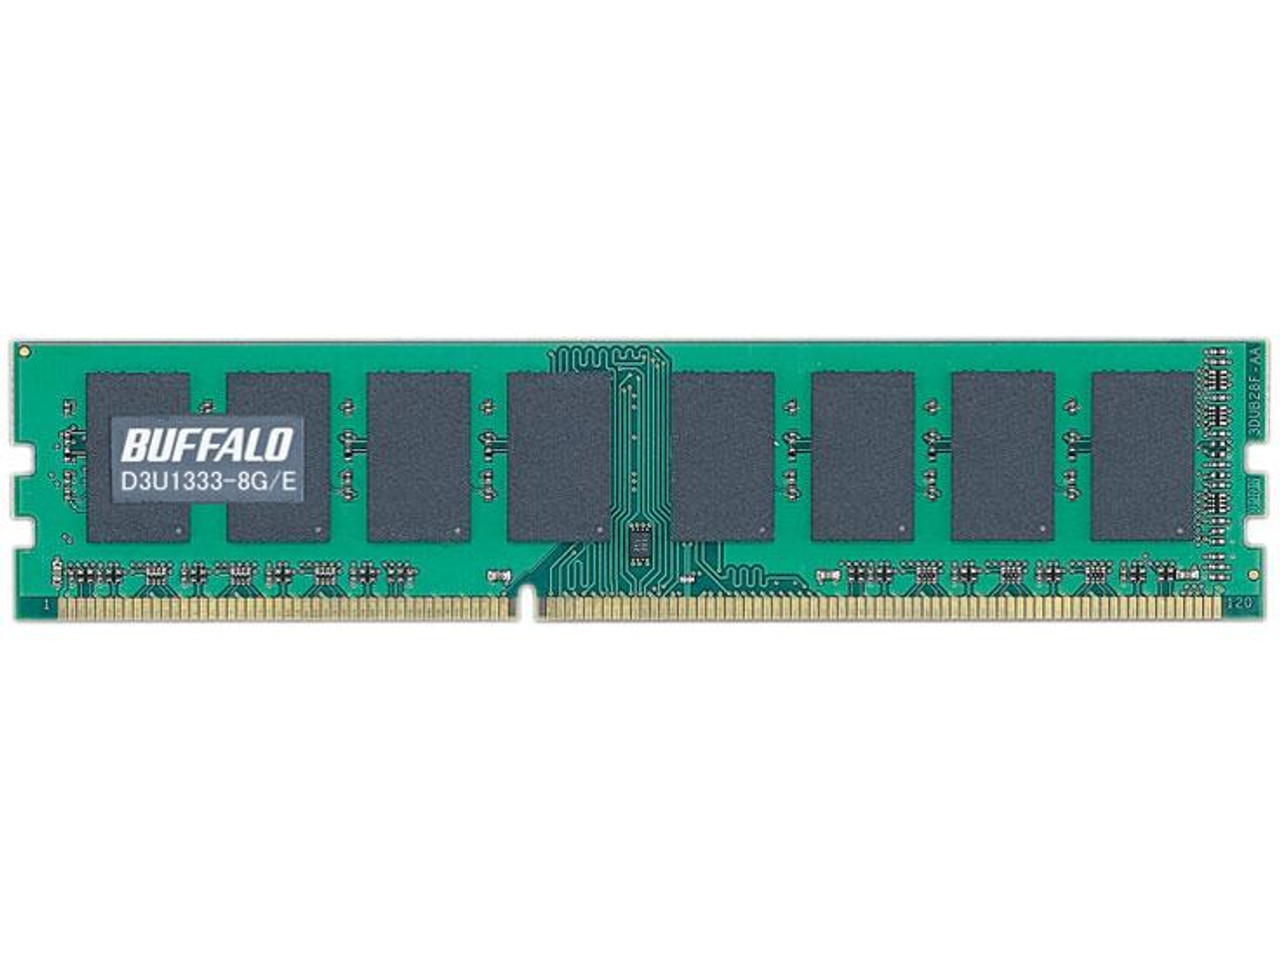 D3U1333-8G/E Buffalo 8GB PC3-10600 DDR3-1333MHz non-ECC Unbuffered CL9 240-Pin DIMM Dual Rank Memory Module